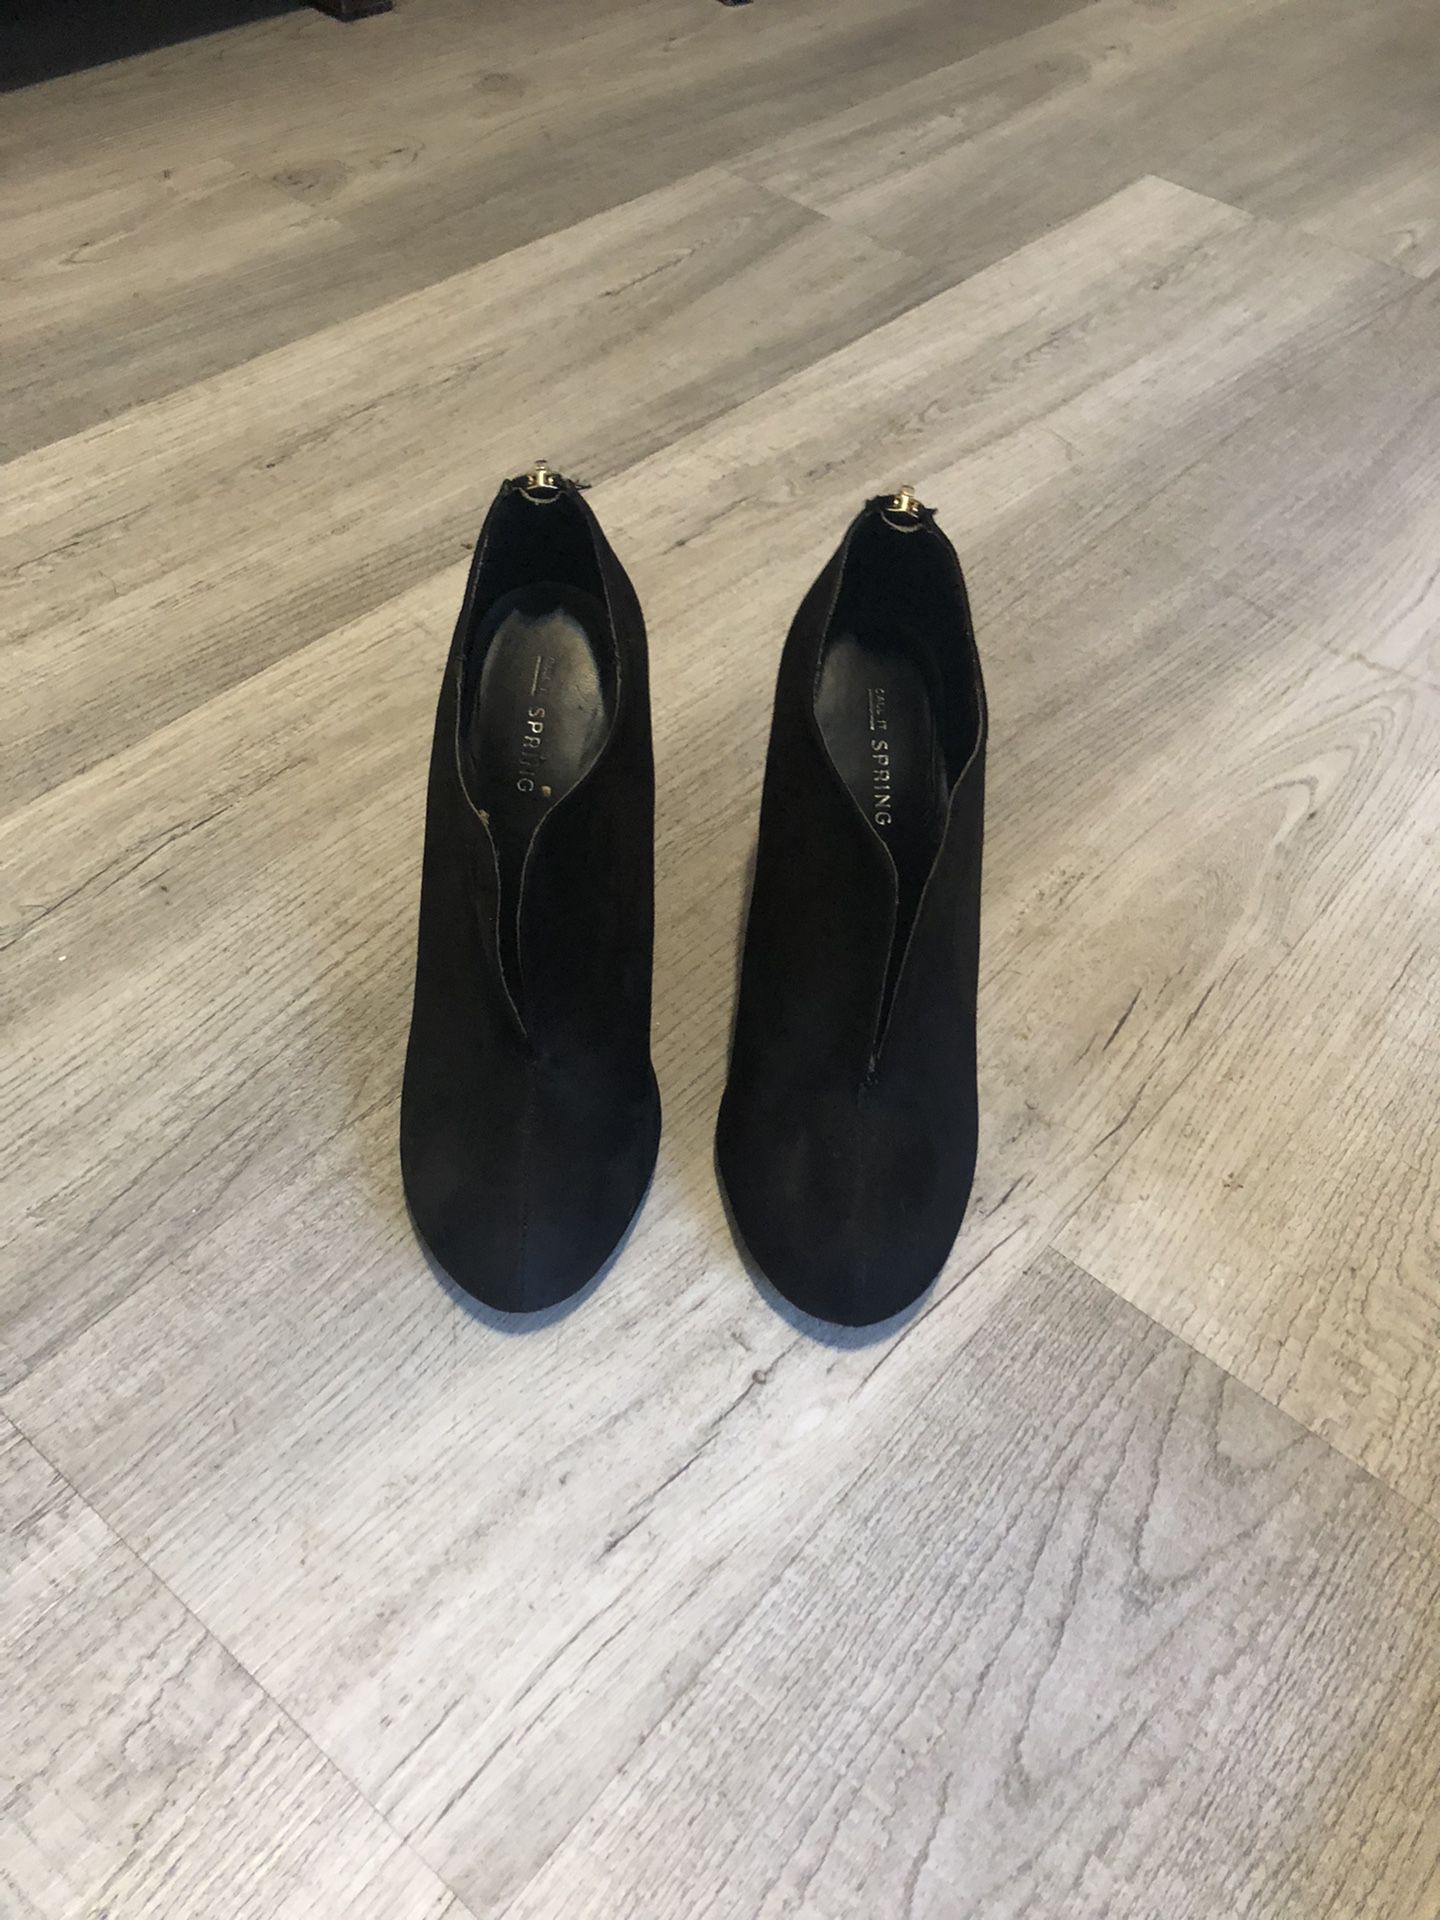 Women’s Black Booties High Heels Size 7